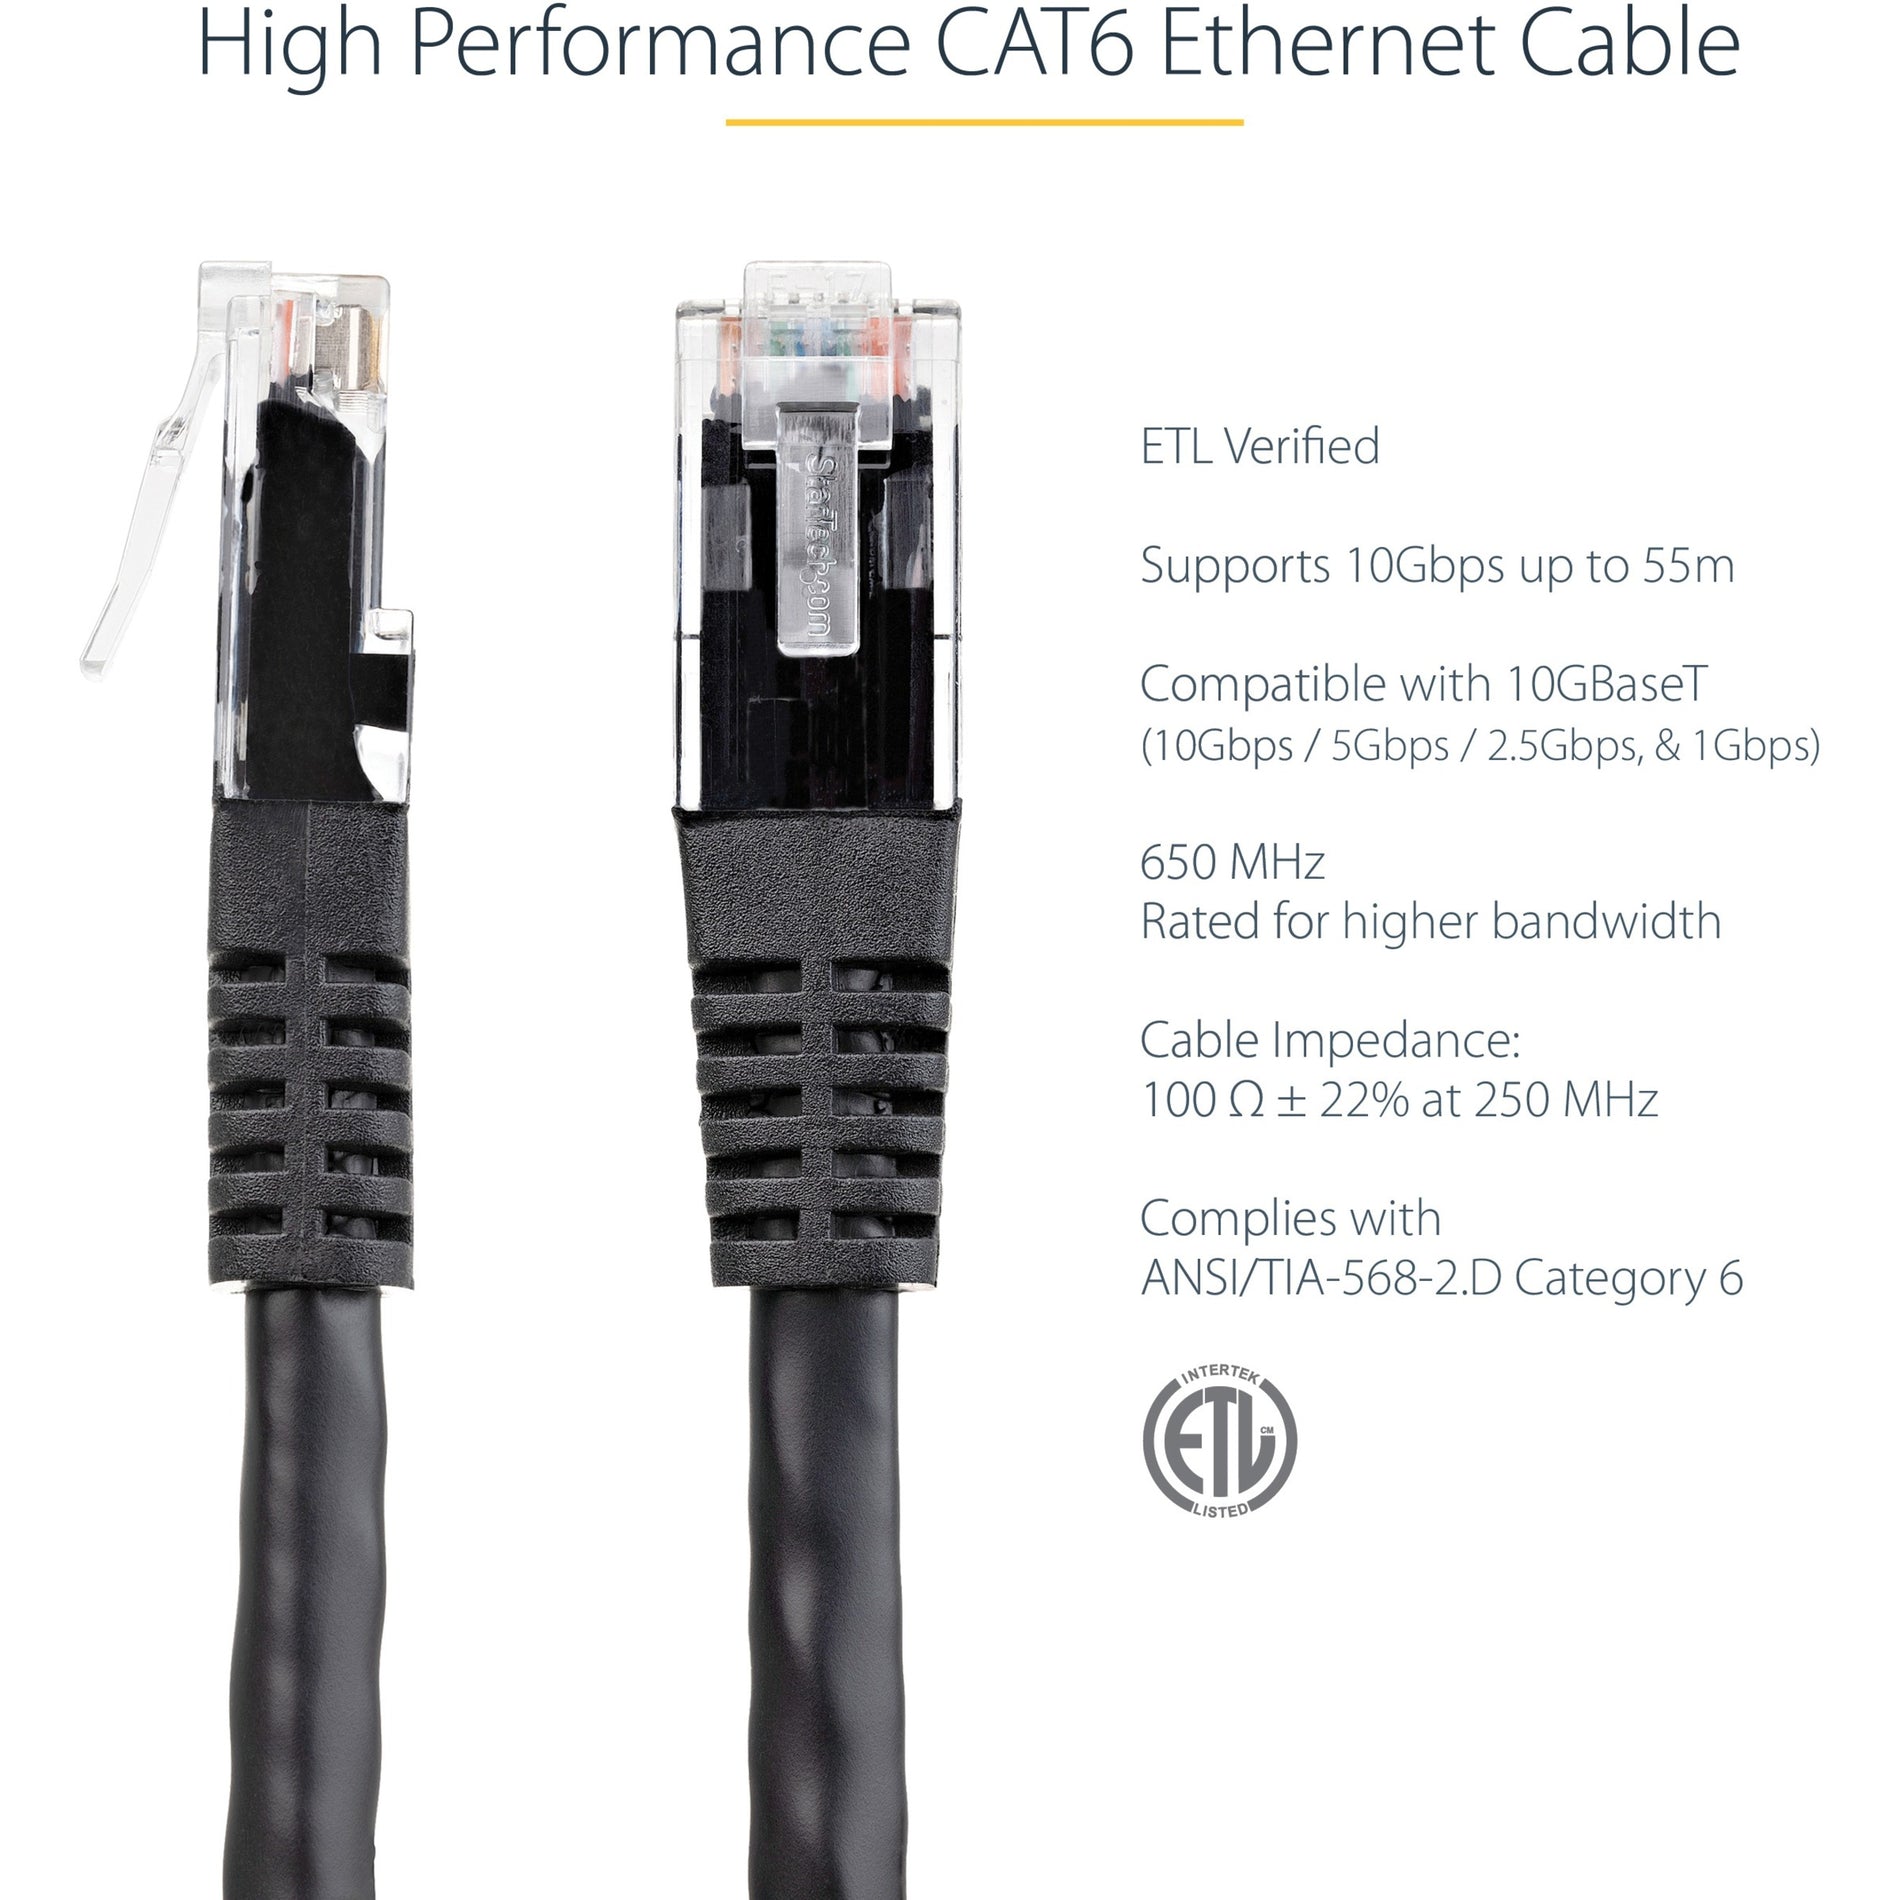 星特科技.com C6PATCH1BK 1英尺 黑色 Cat6 UTP 补丁电缆 ETL 验证，10 Gbit/s，PoE，耐锈，耐磨，耐弯 星特科技.com的品牌名称是“StarTech.com”